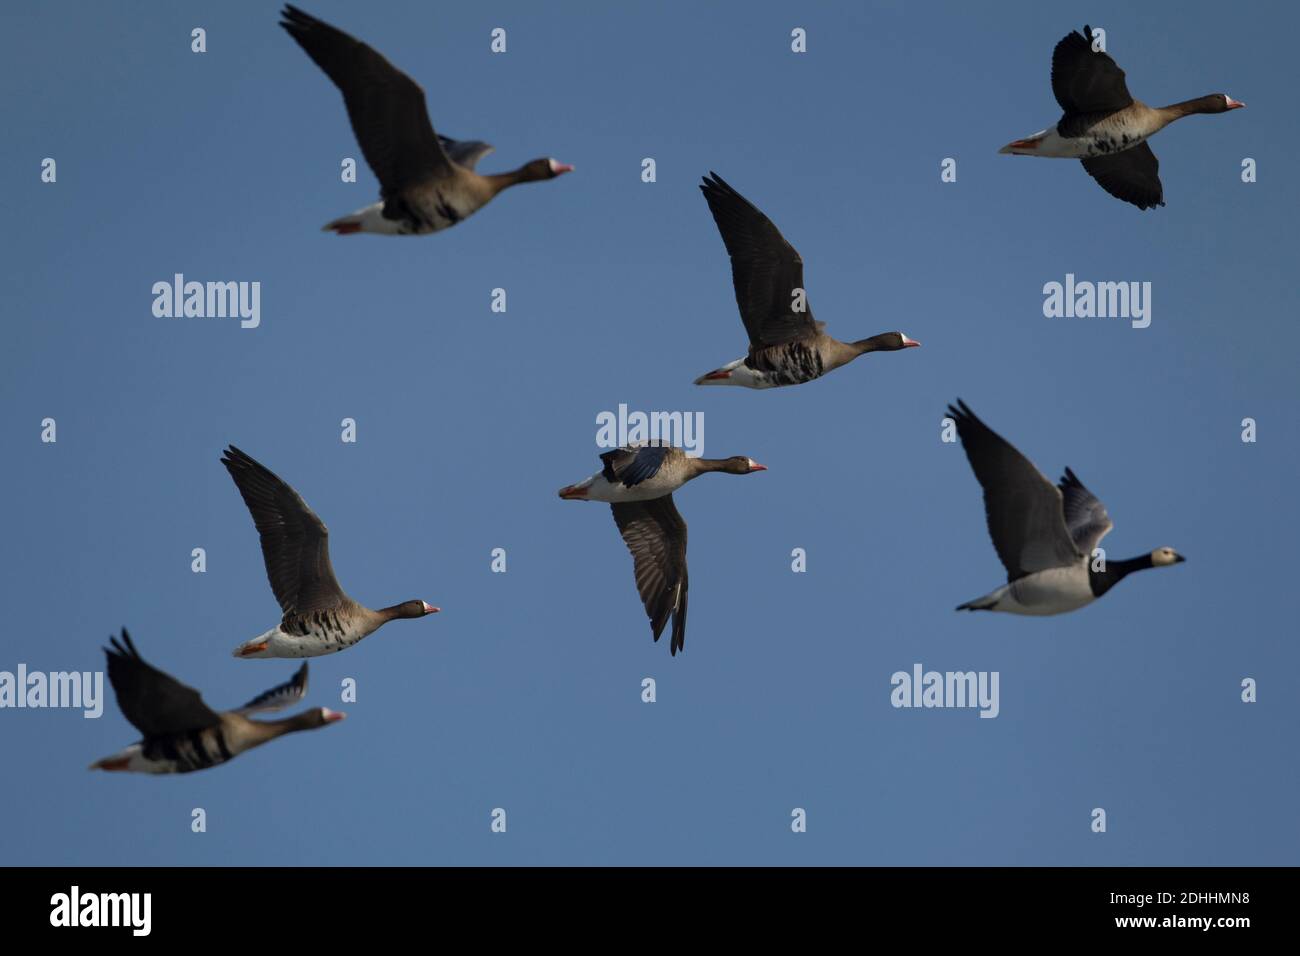 Los gansos migratorios probablemente traigan influenca aviar Foto de stock